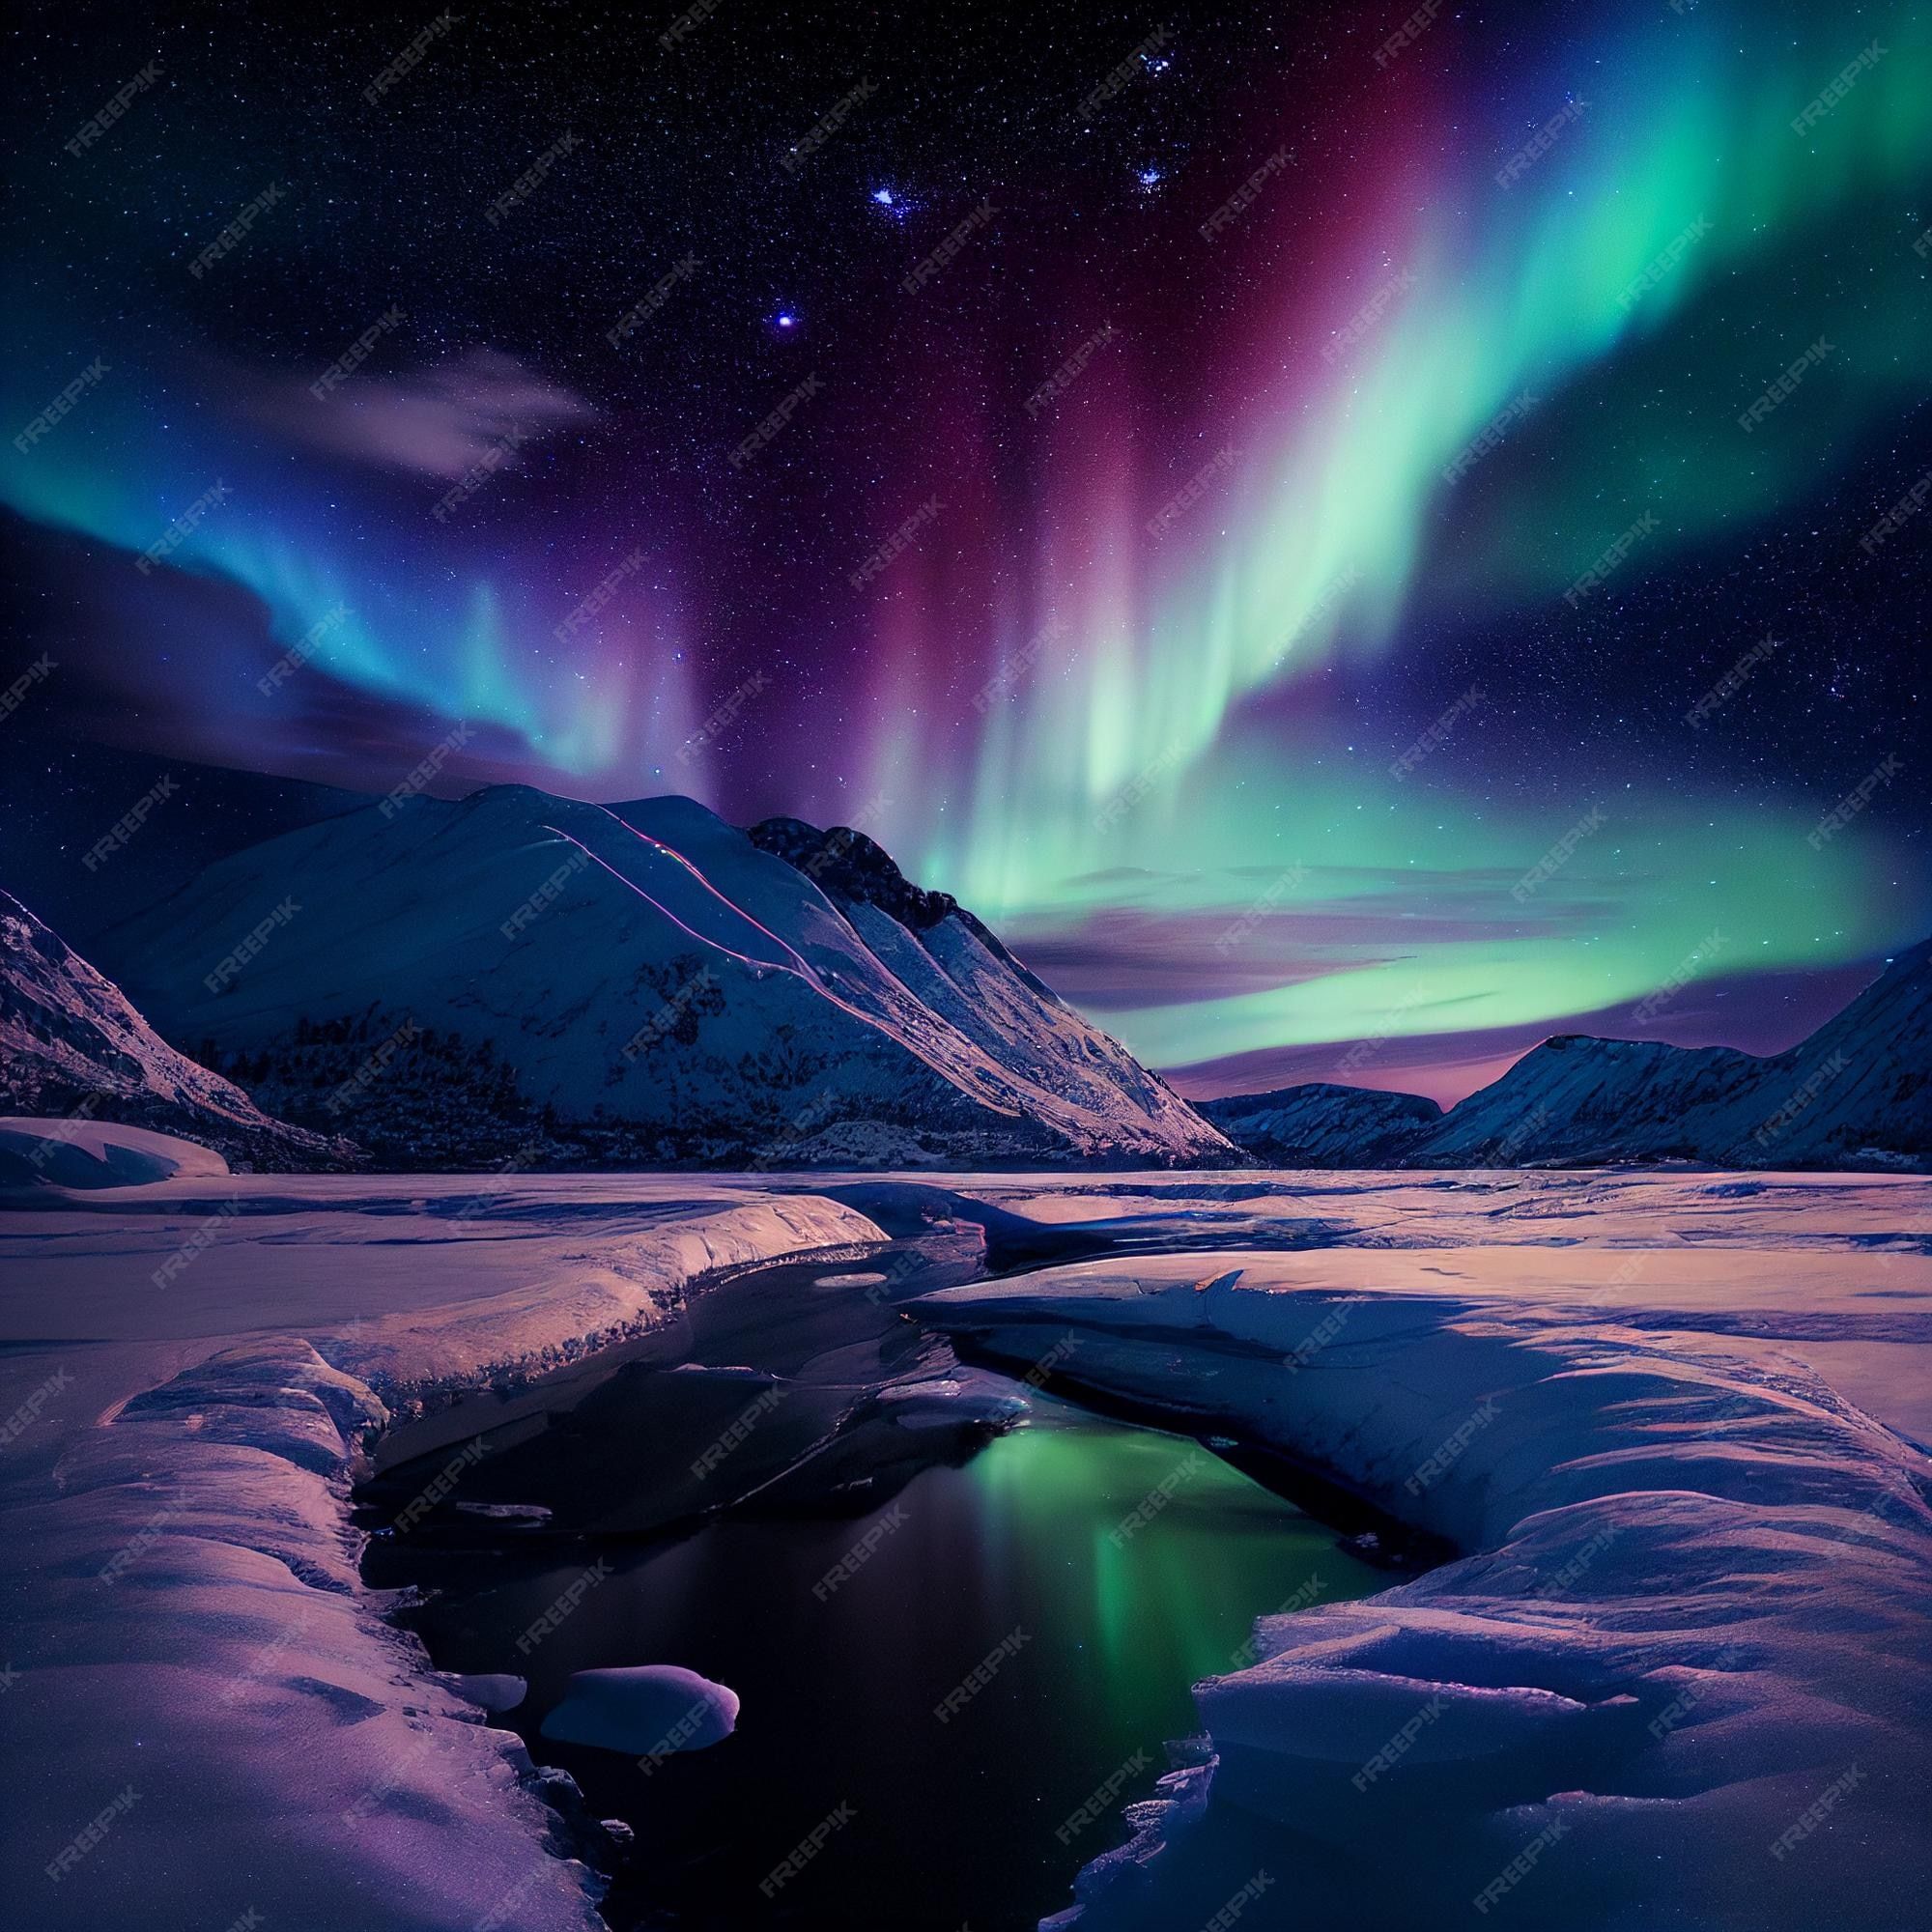  Polarlicht Hintergrundbild 2000x2000. Nordlichter am himmel in der arktis über dem schnee, wunderschönes naturphänomen großartig